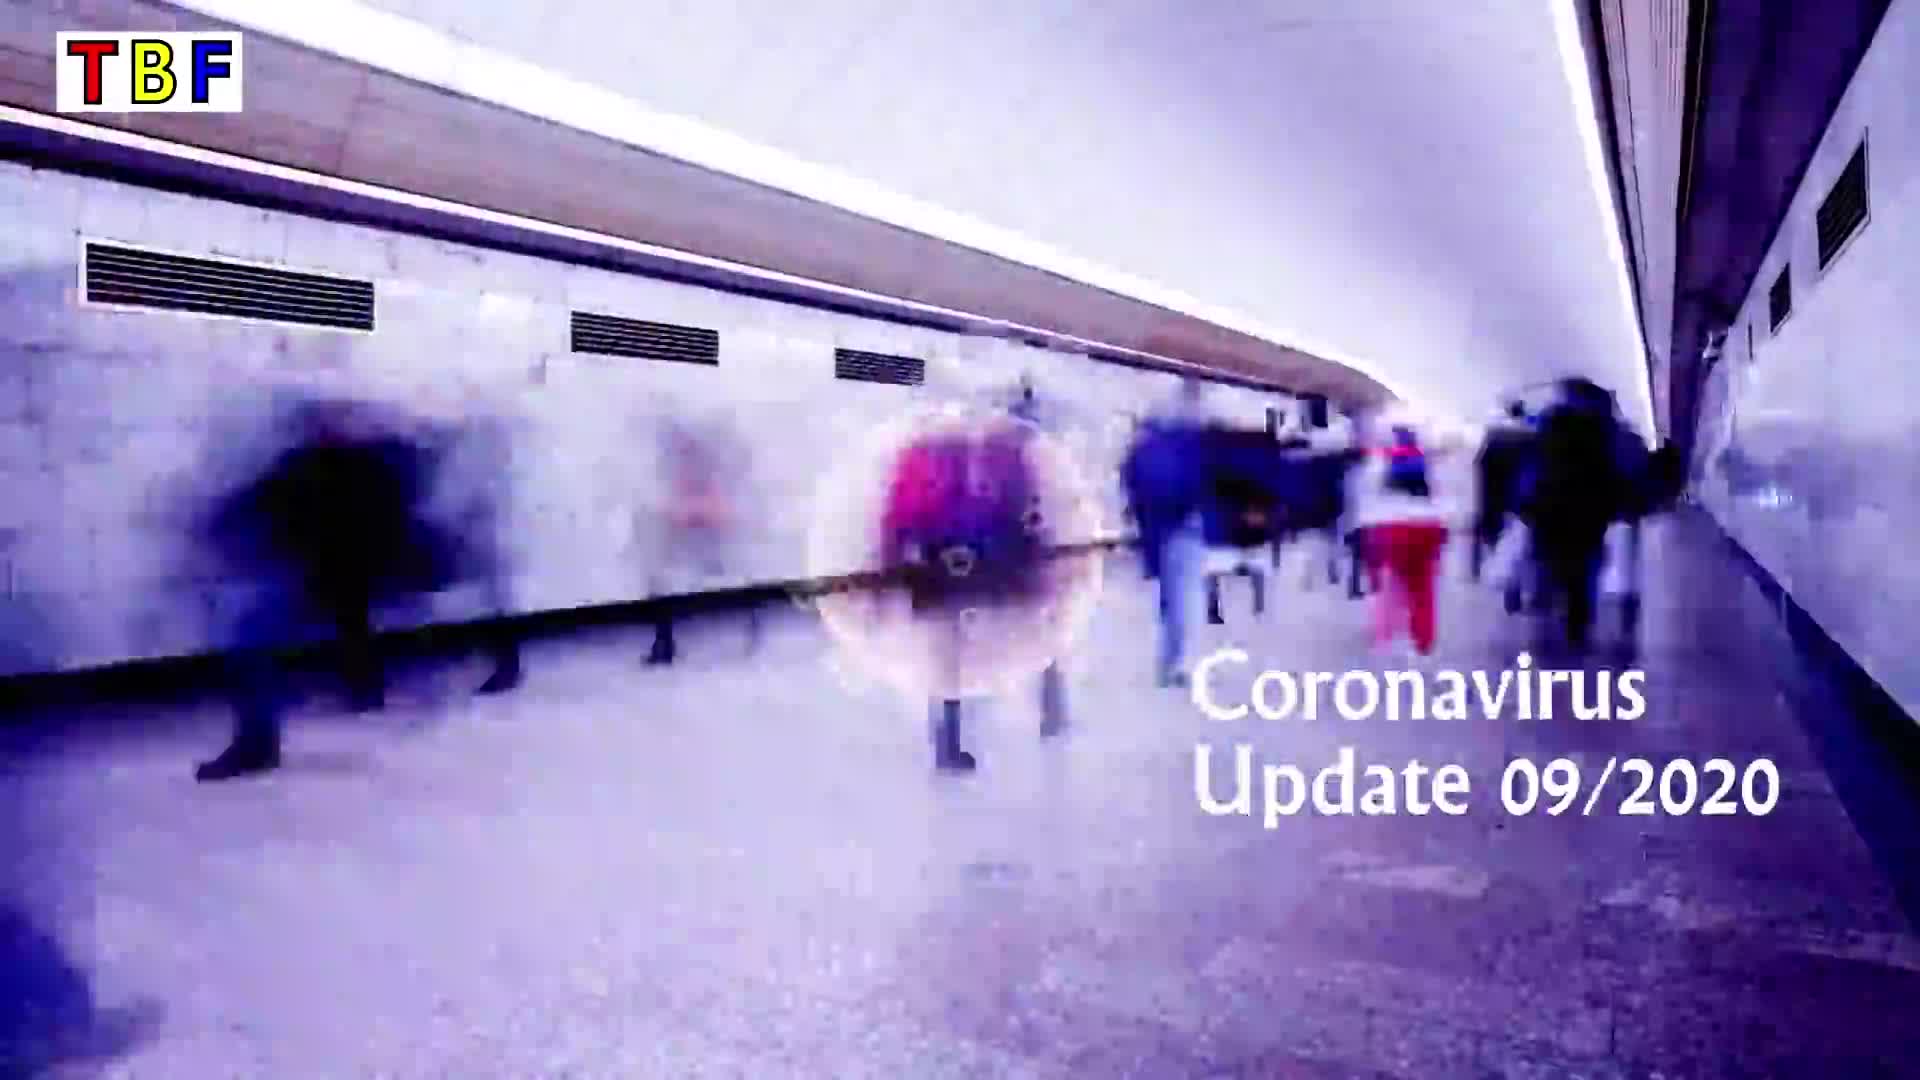 Coronavirus Update 09/2020